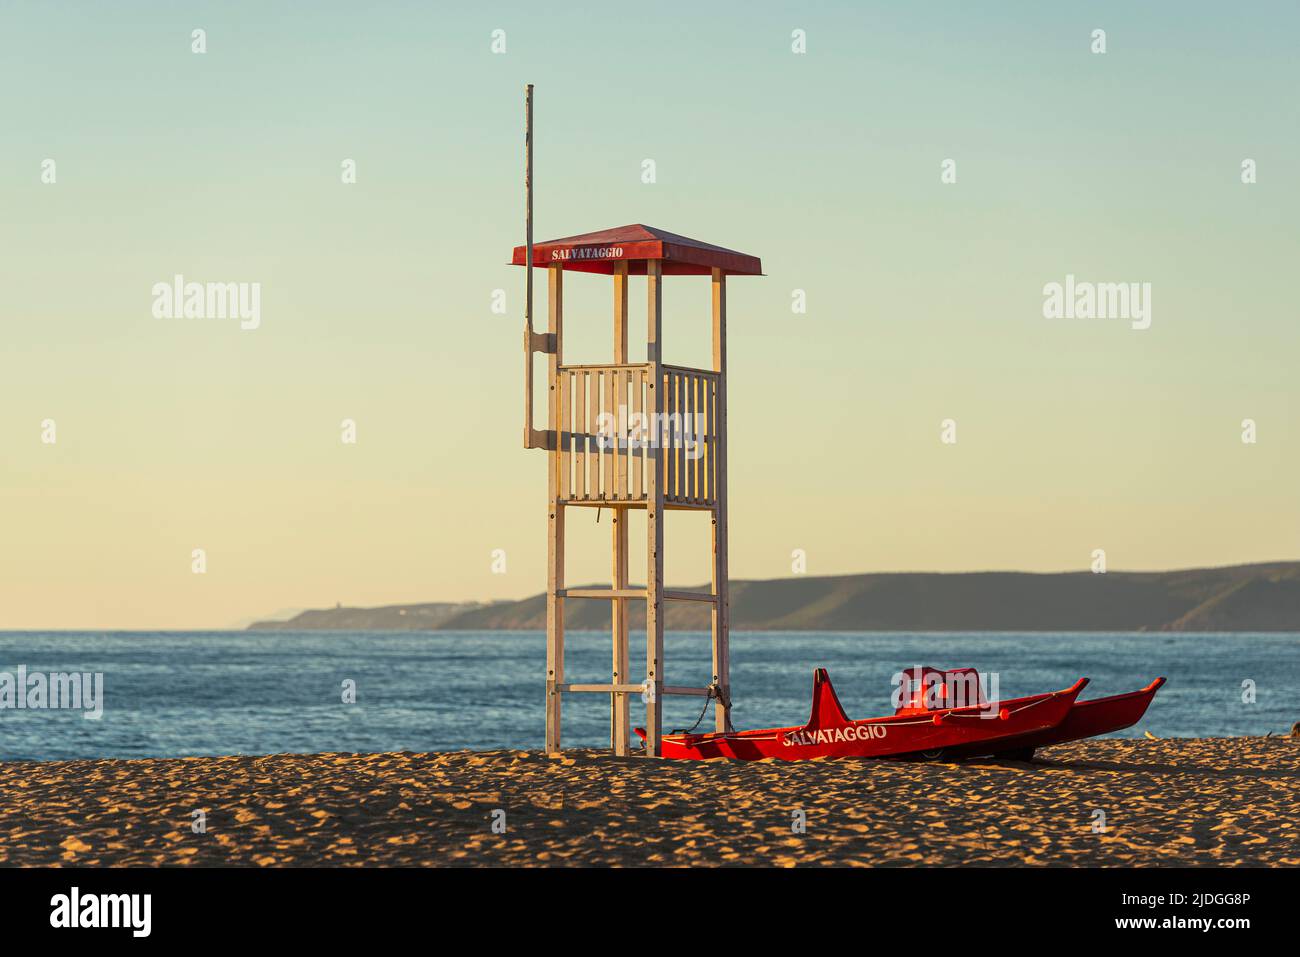 Tour de guet et bateau de sauvetage Salvataggio sur la plage de sable des dunes de Piscinas dans la lumière dorée au coucher du soleil, Costa Verde, Sardaigne, Italie Banque D'Images